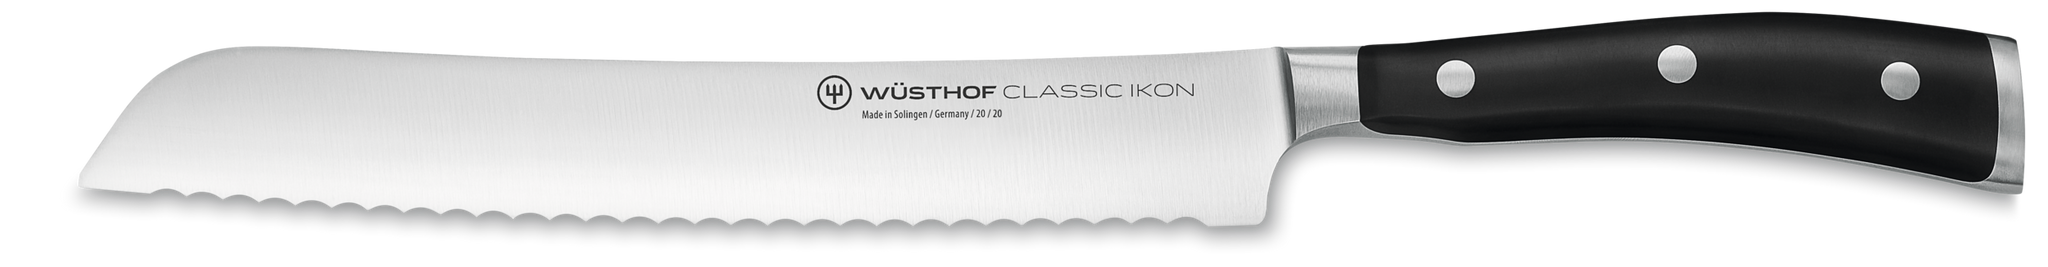 Classic Ikon 11-Piece Knife Block Set